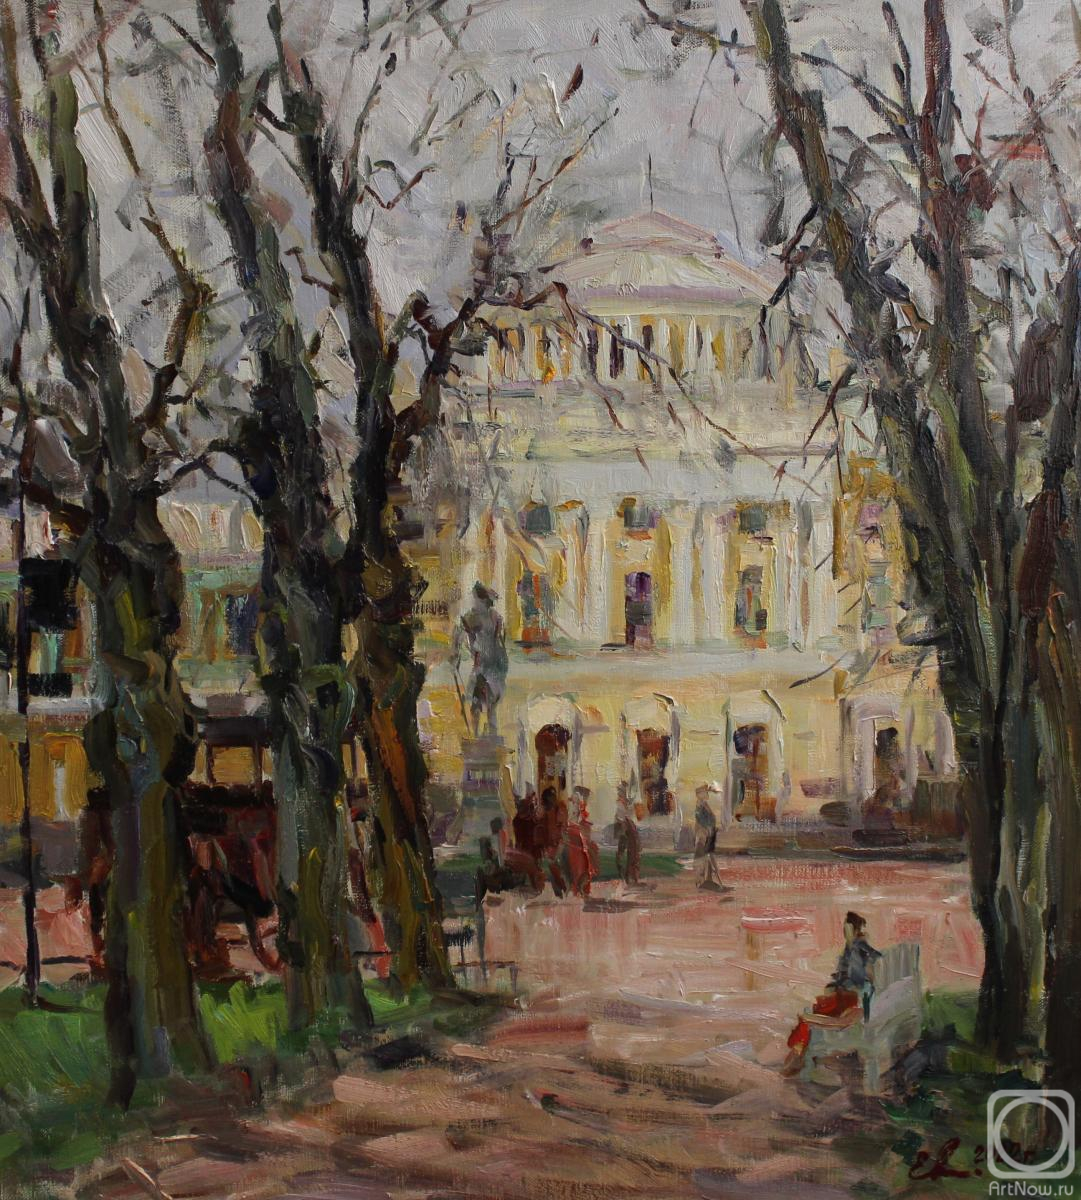 Malykh Evgeny. Pavlovsk Palace. A windy day